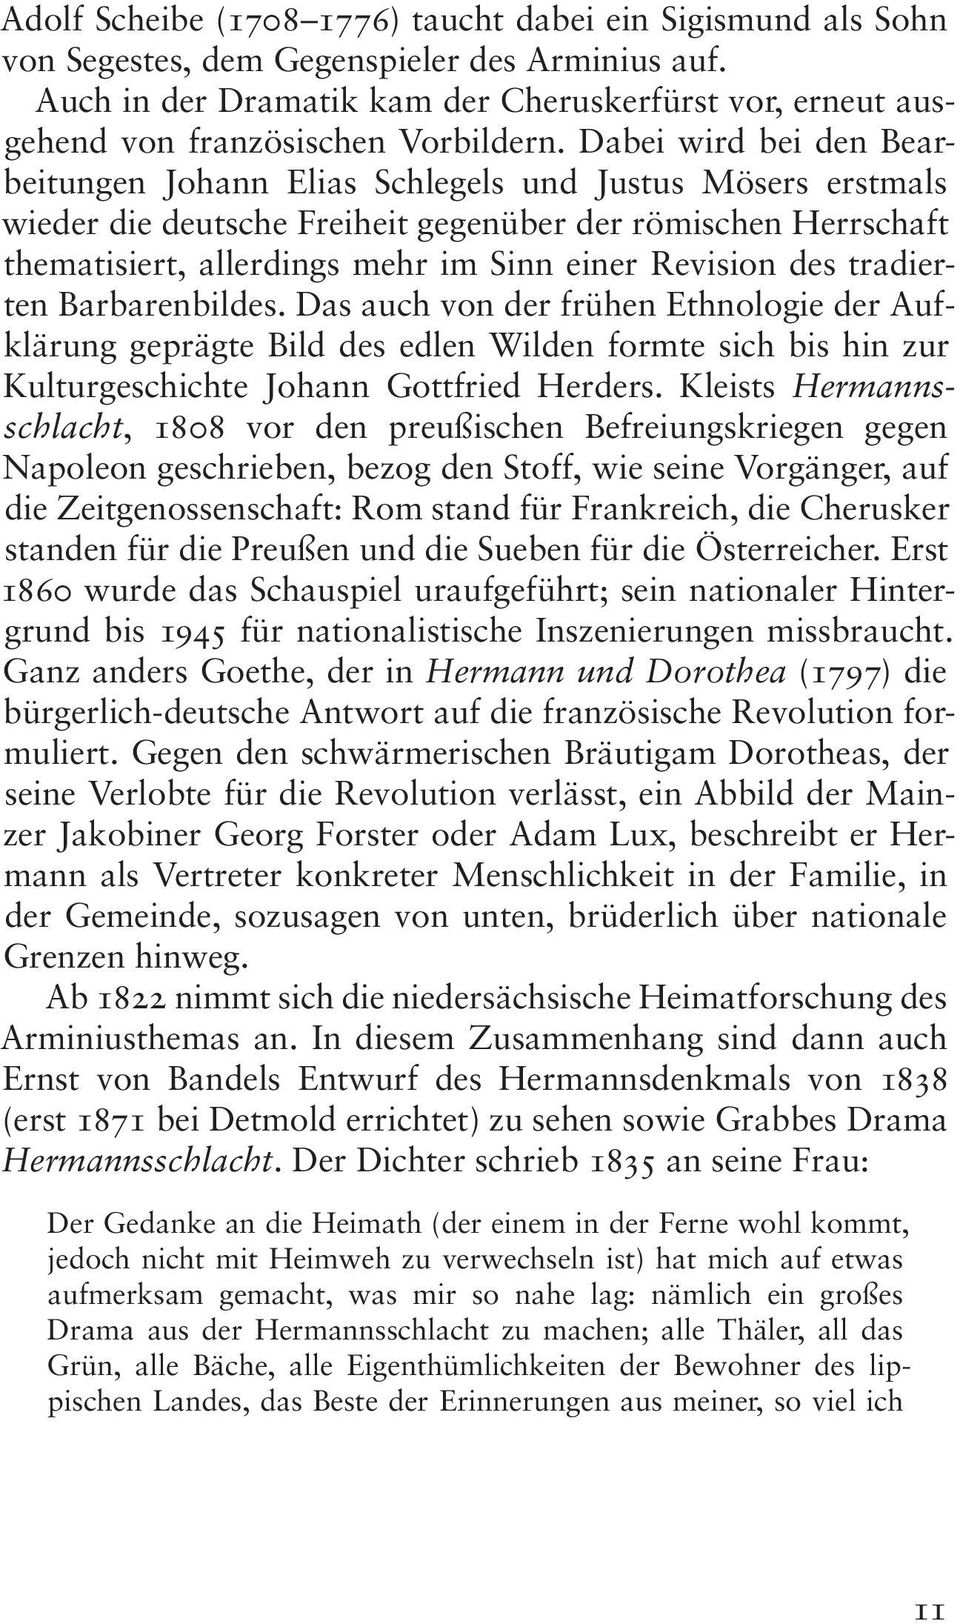 Dabei wird bei den Bearbeitungen Johann Elias Schlegels und Justus Mösers erstmals wieder die deutsche Freiheit gegenüber der römischen Herrschaft thematisiert, allerdings mehr im Sinn einer Revision